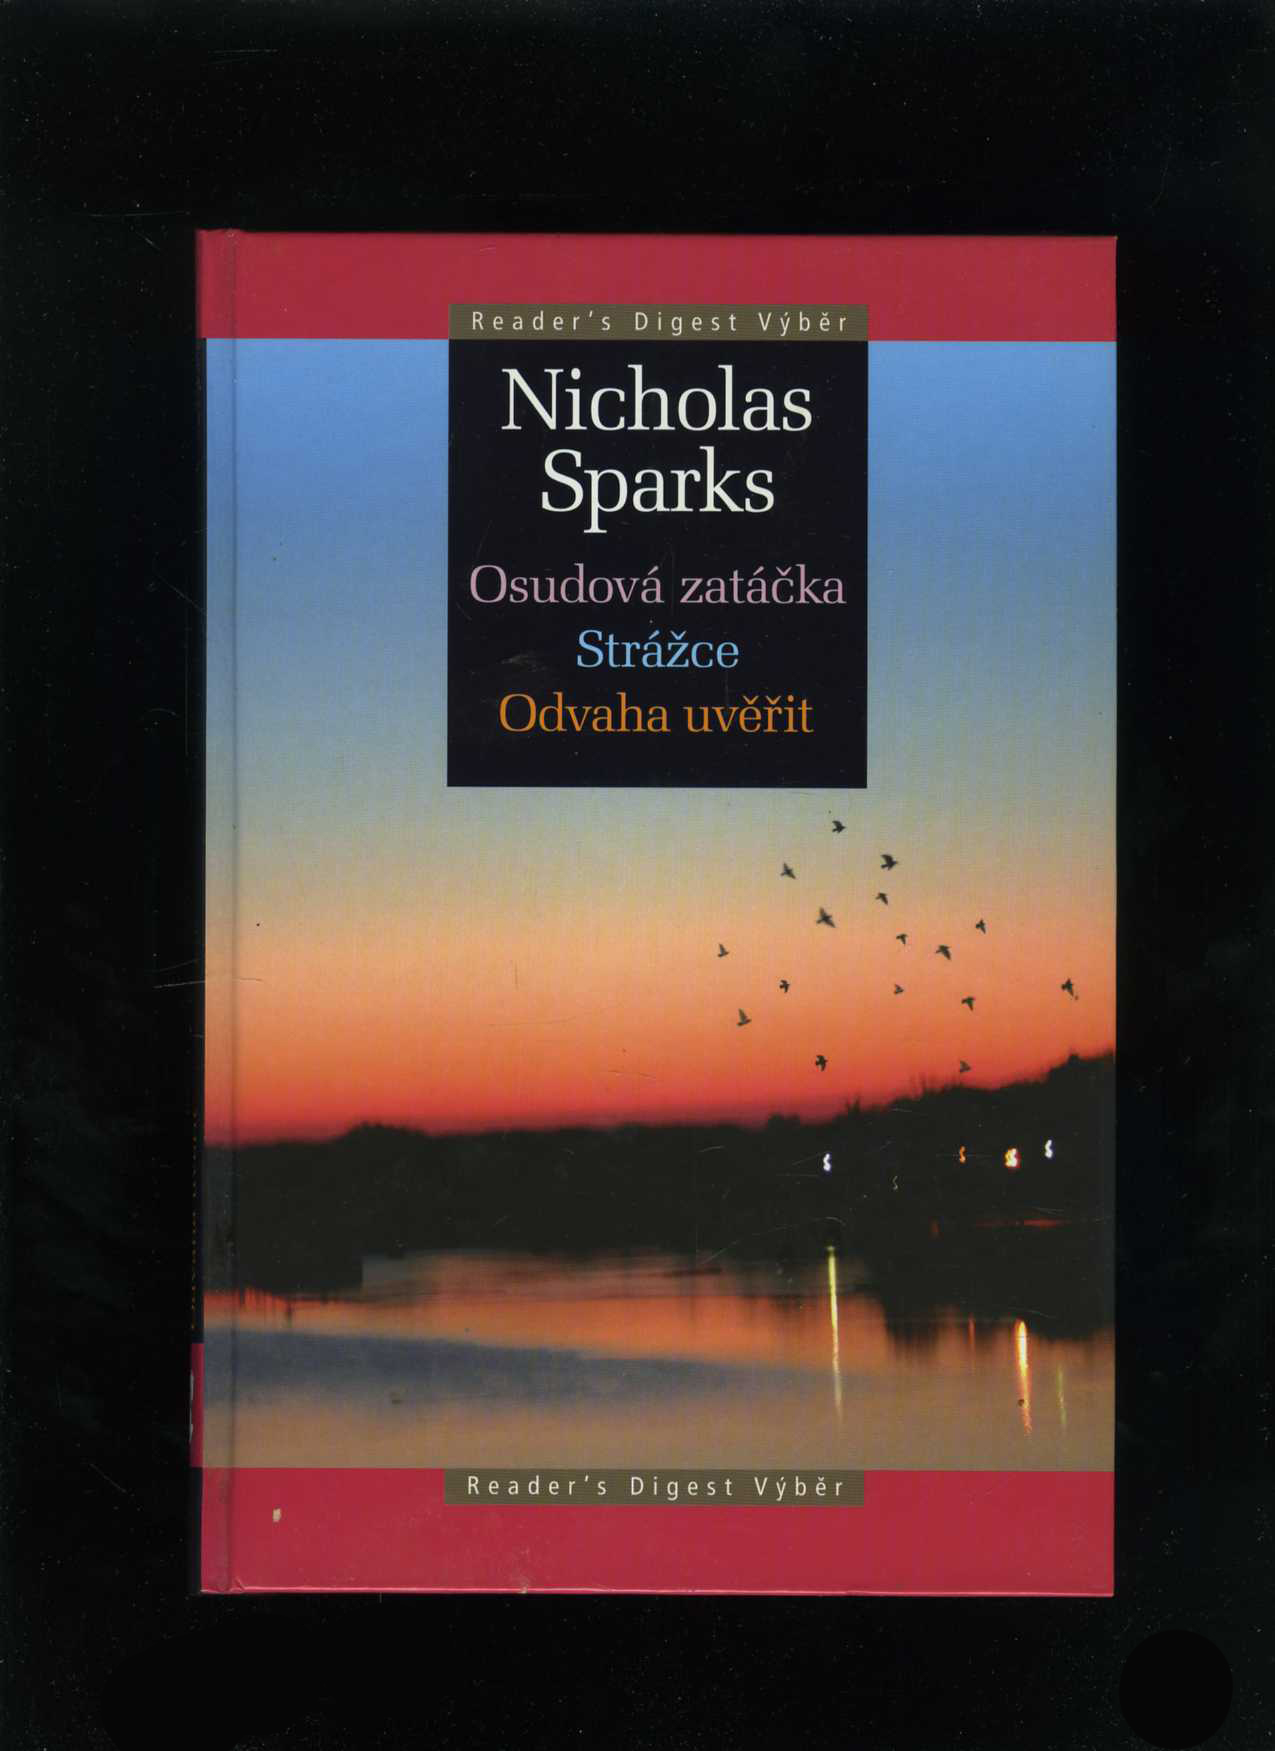 Osudová zatáčka / Strážce / Odvaha uvěřit (Nicholas Sparks)